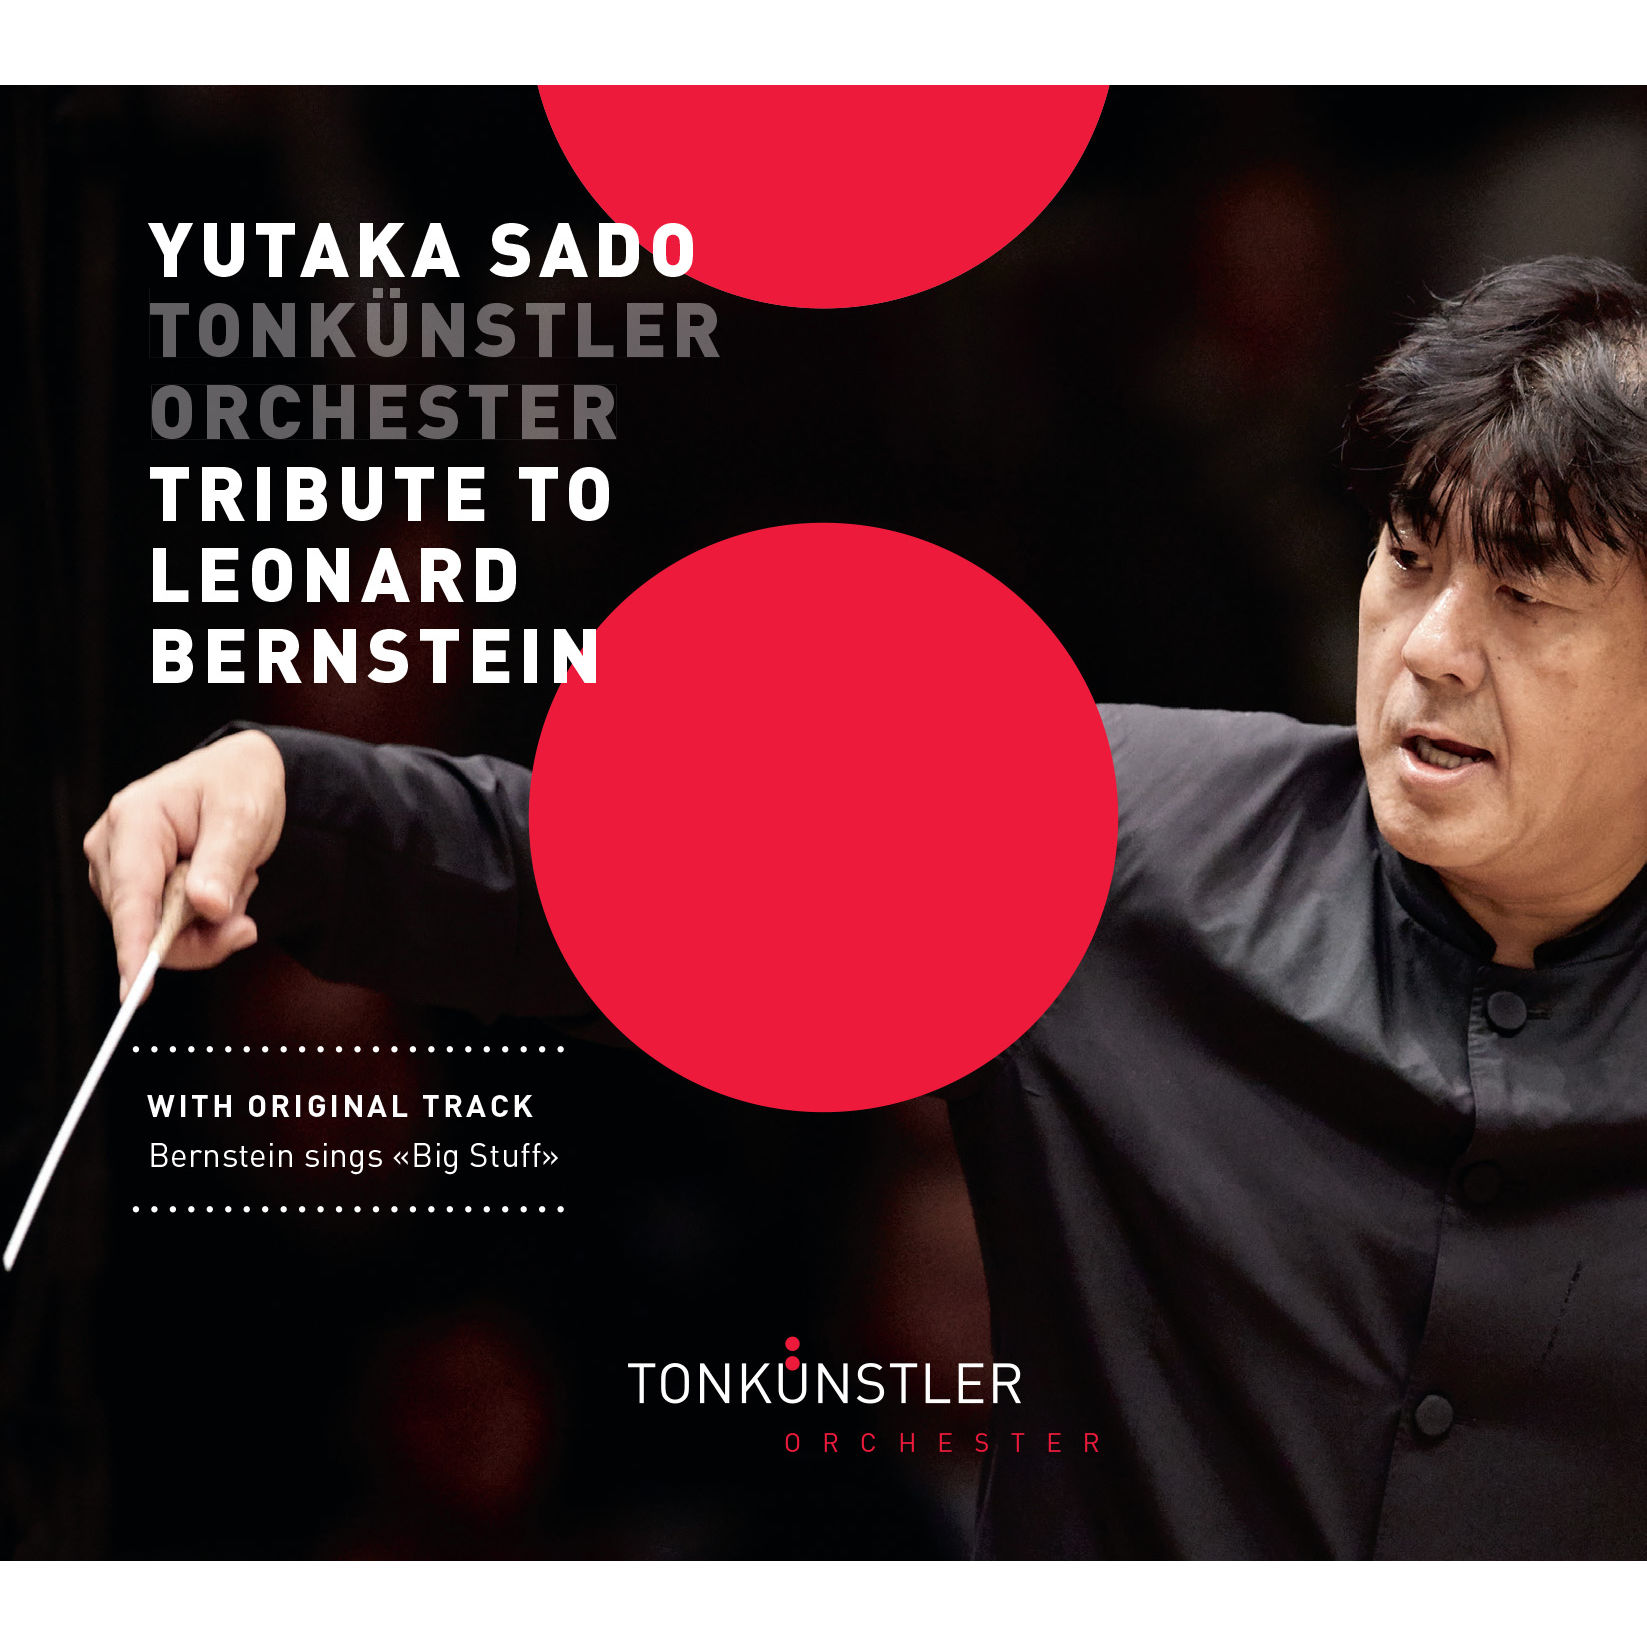 Tonkünstler Orchester – Tribute to Leonard Bernstein